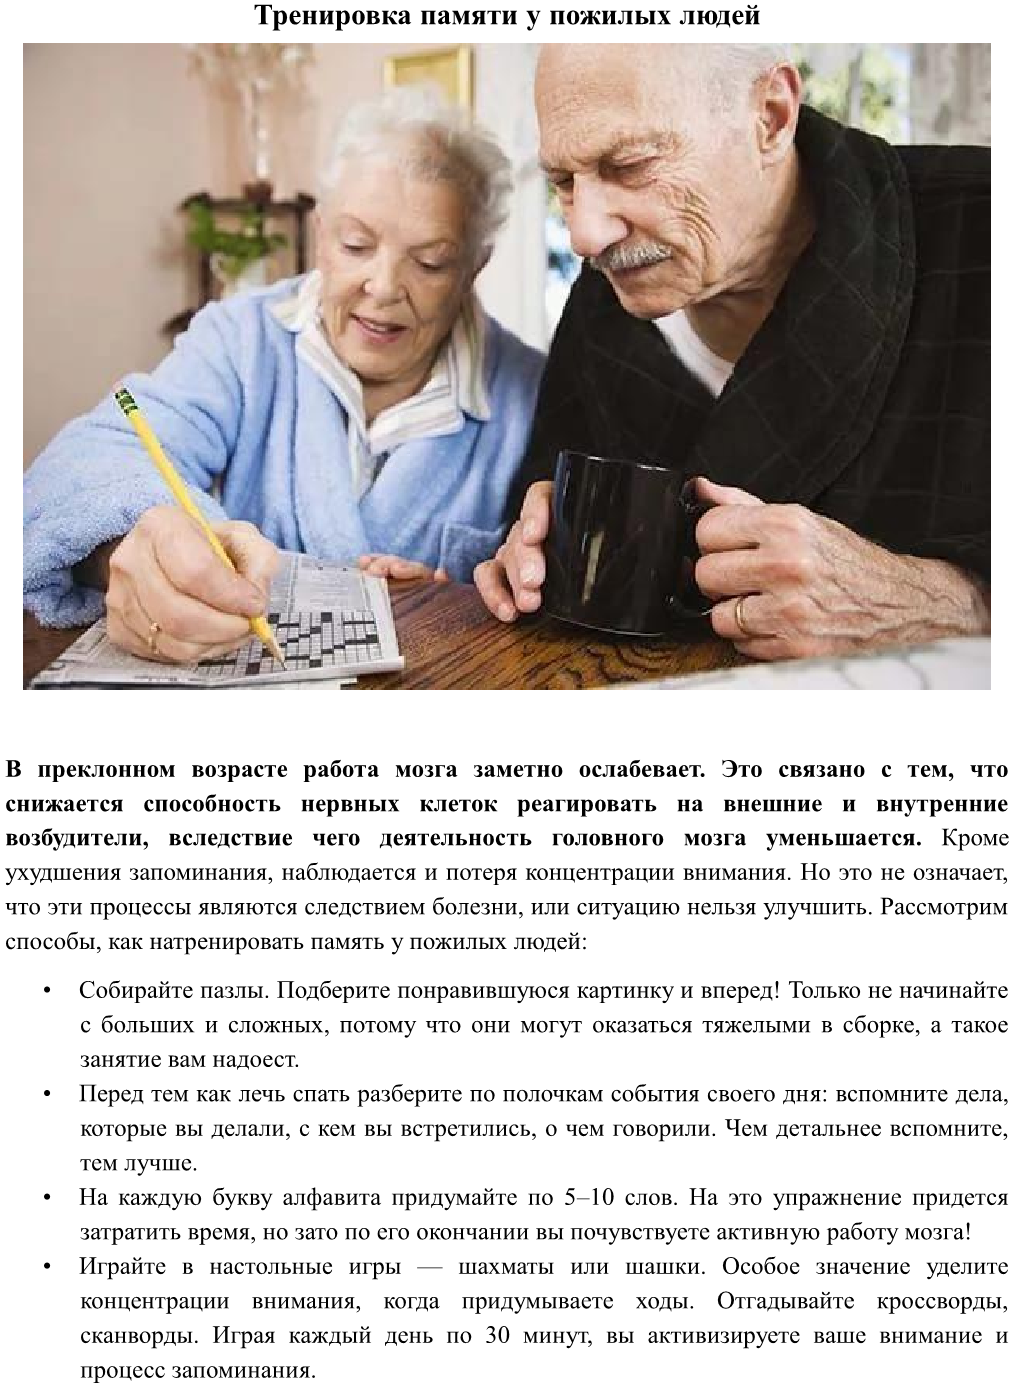 Упражнения для мозга и памяти пожилого. Рекомендации развития памяти у пожилых. Внимание у пожилых людей. Тренировка мозга для пожилых людей. Упражнения на сохранение памяти у пожилых людей.